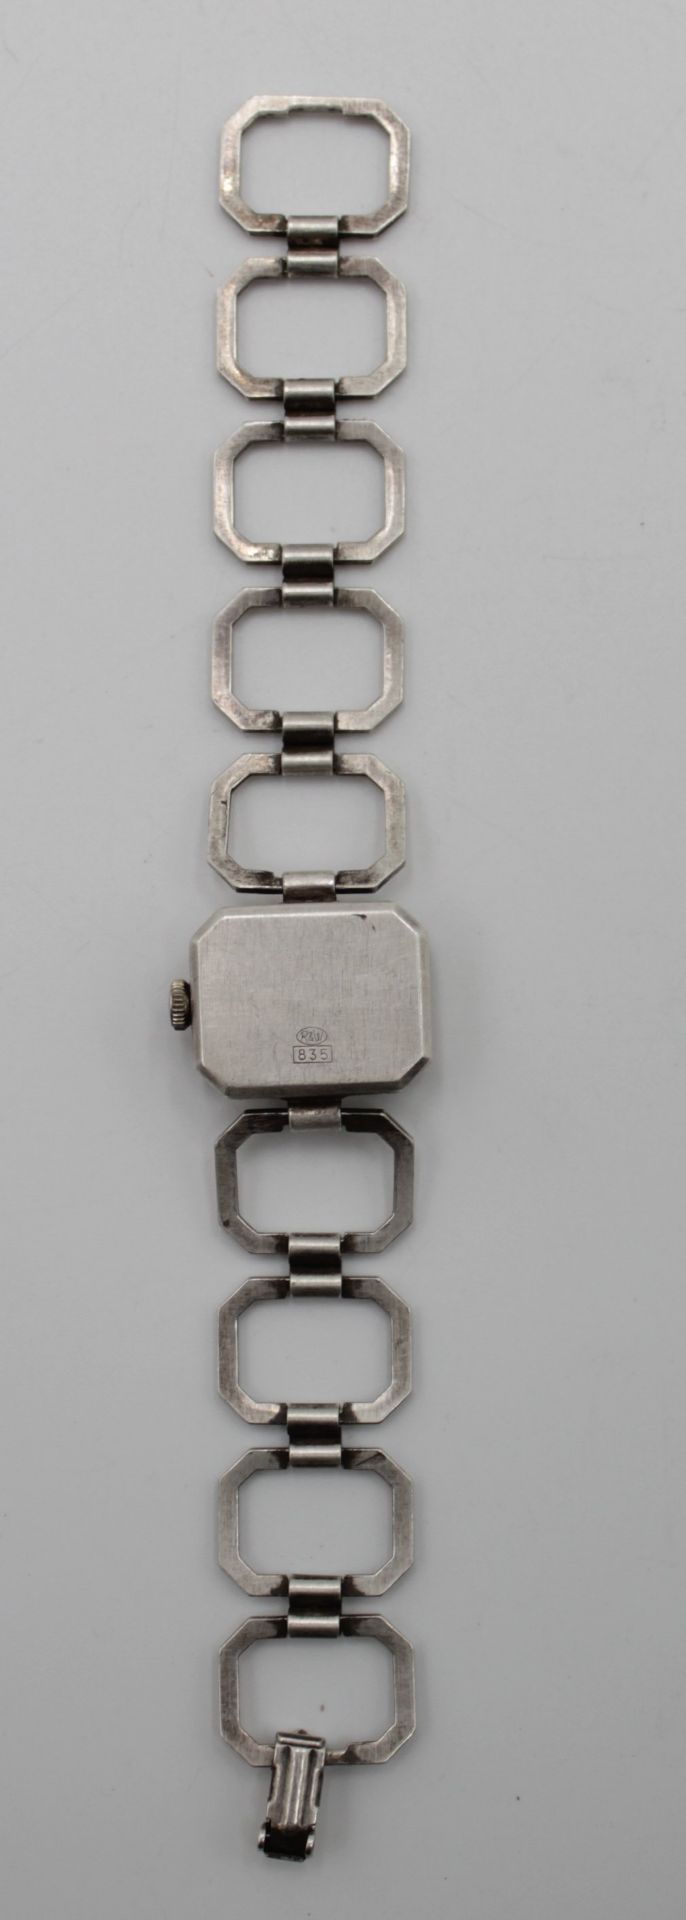 Damen-Armbanduhr, Ankra, 835er Silber, Kronenaufzug, Werk läuft, zus ca. 25,4gr. - Image 3 of 5